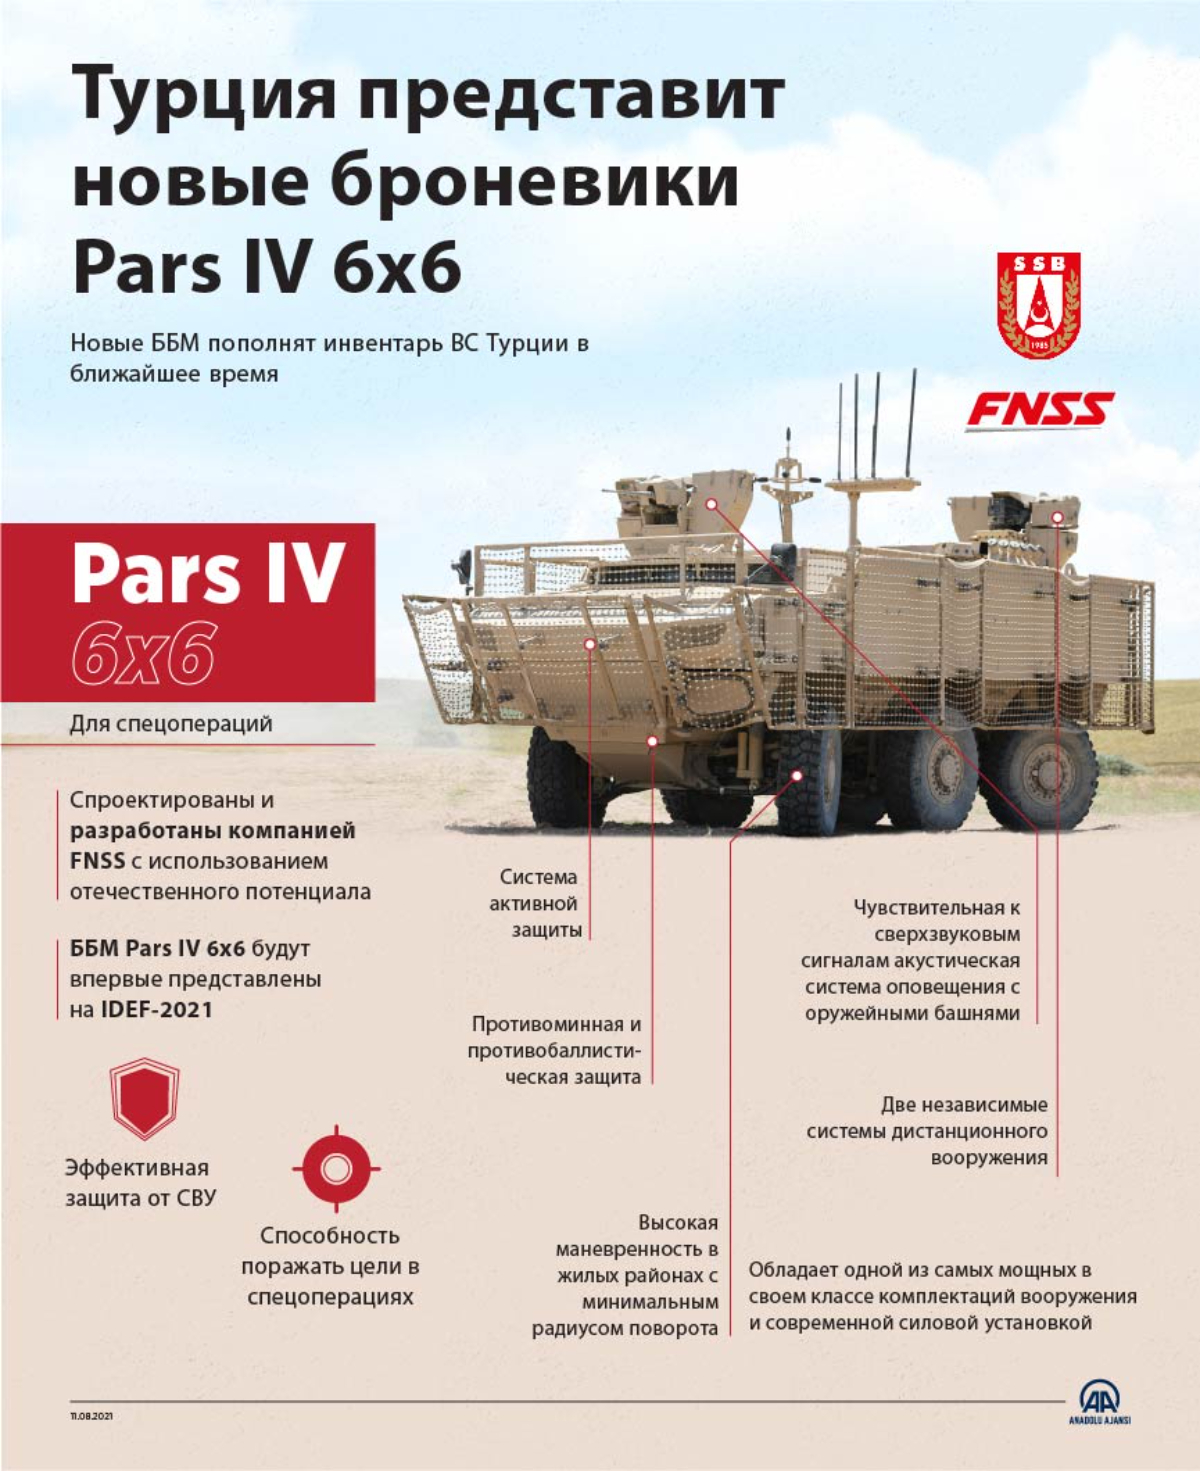 Турция представит новые броневики Pars IV 6×6